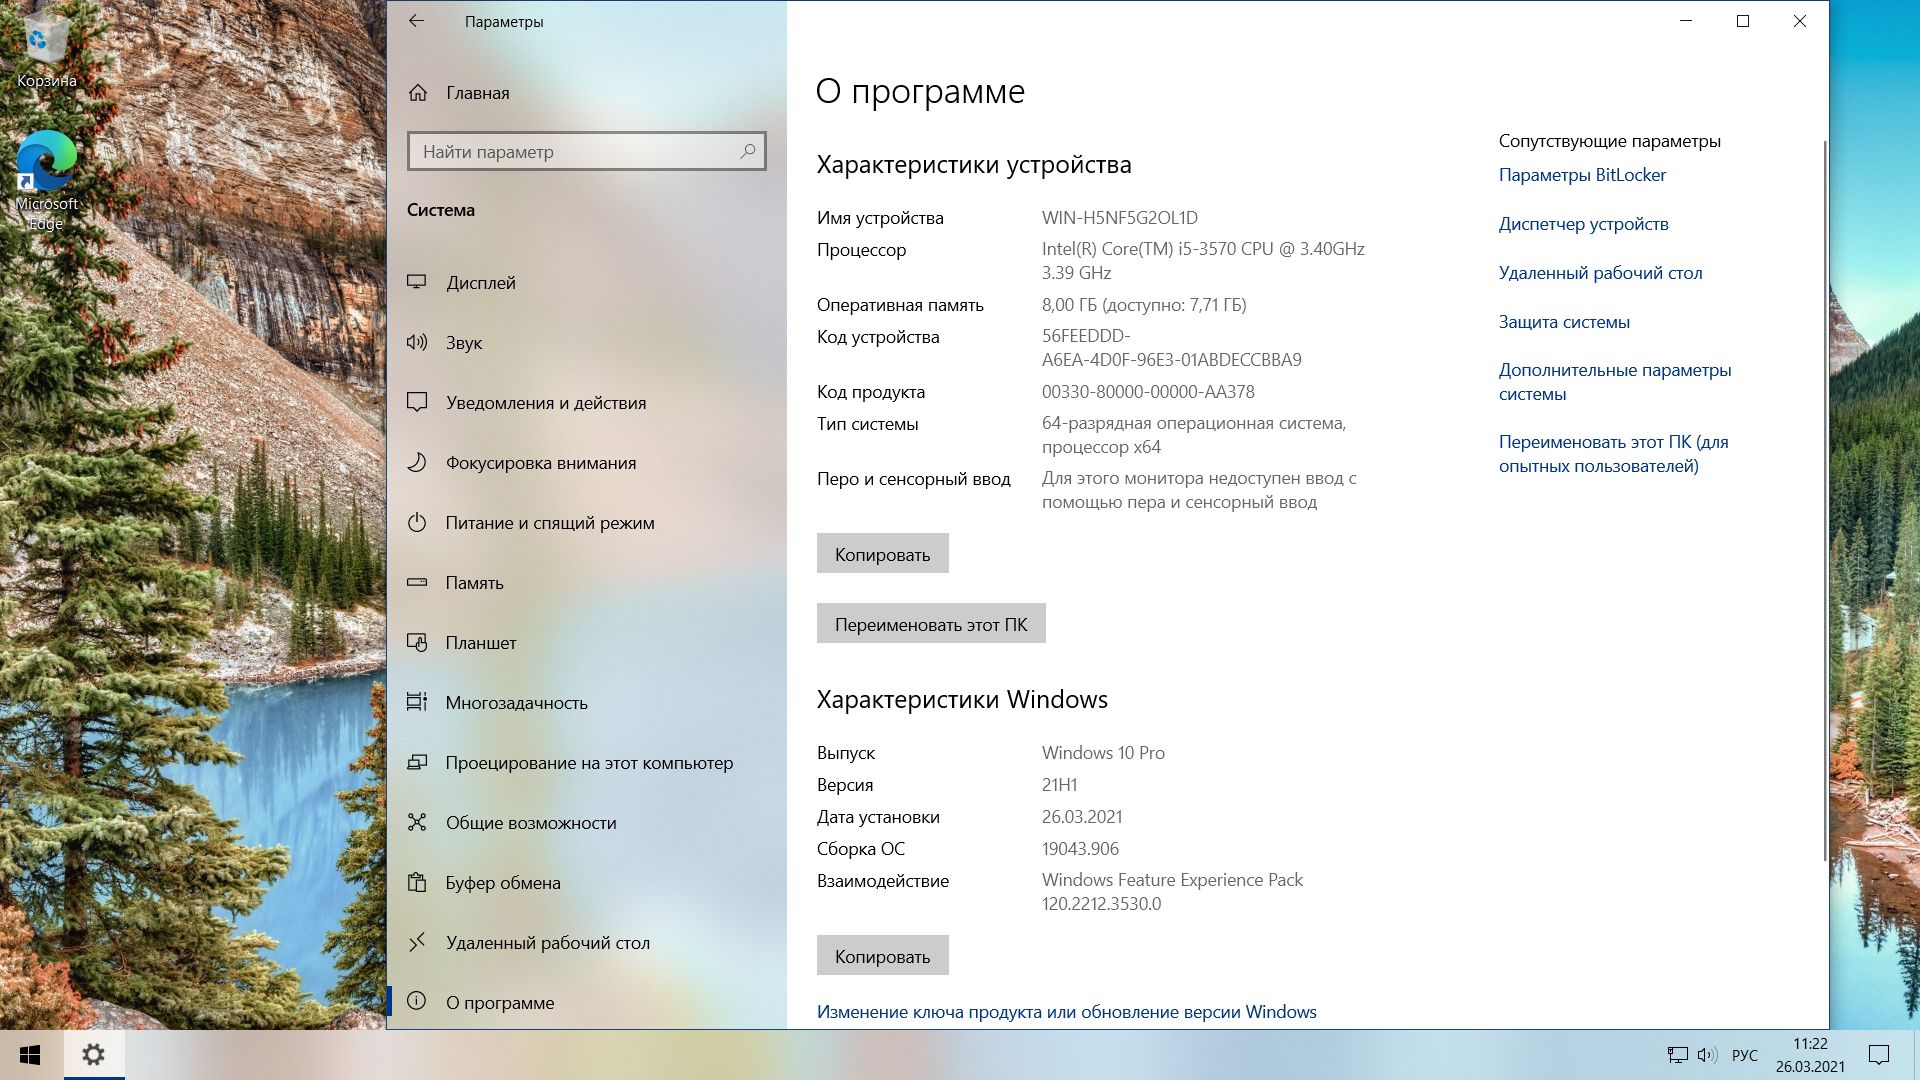 21 h 1. Виндовс 10 Pro h21. Виндовс 10 21h1. 21h1 Windows 10 что нового. Скрин обновления виндовс 10.